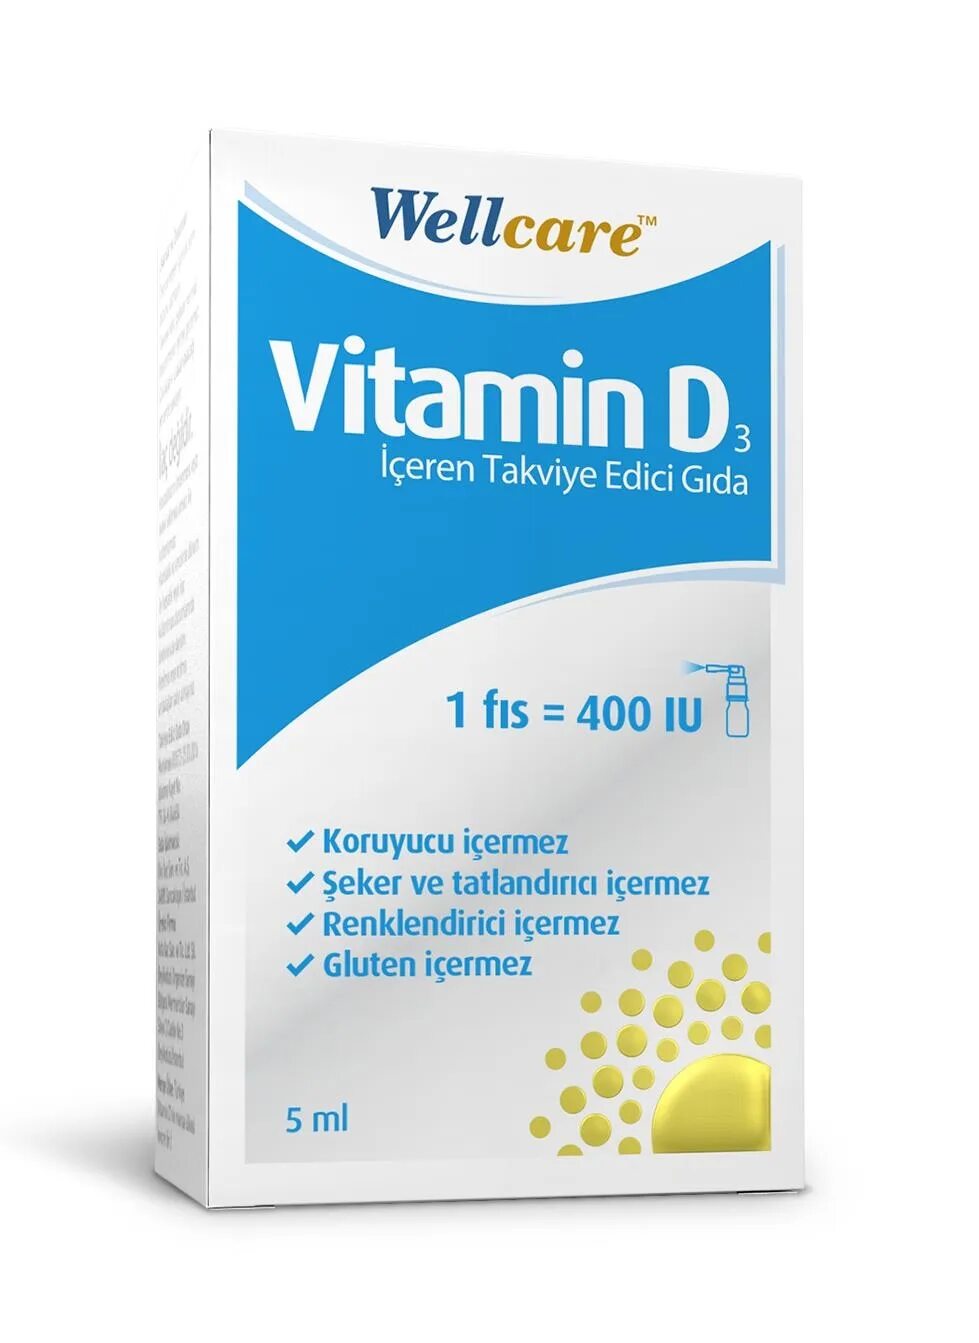 Купить турецкие витамины. Витамин д3 турецкий WELLCARE. WELLCARE Vitamin d3 спрей. Витамин д WELLCARE турецкий инструкция. WELLCARE витамин д Турция.